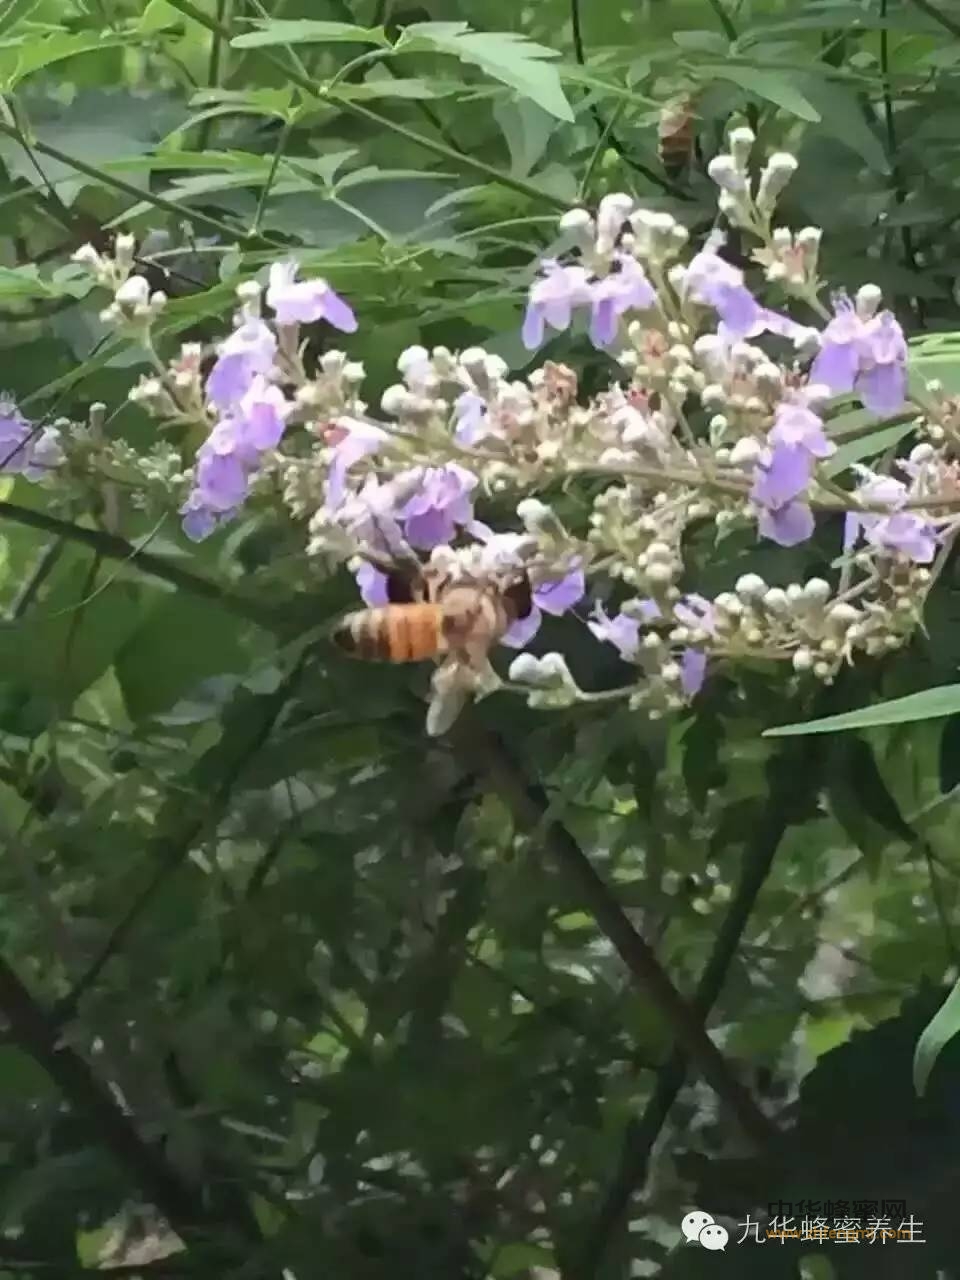 食用蜂蜜有学问！